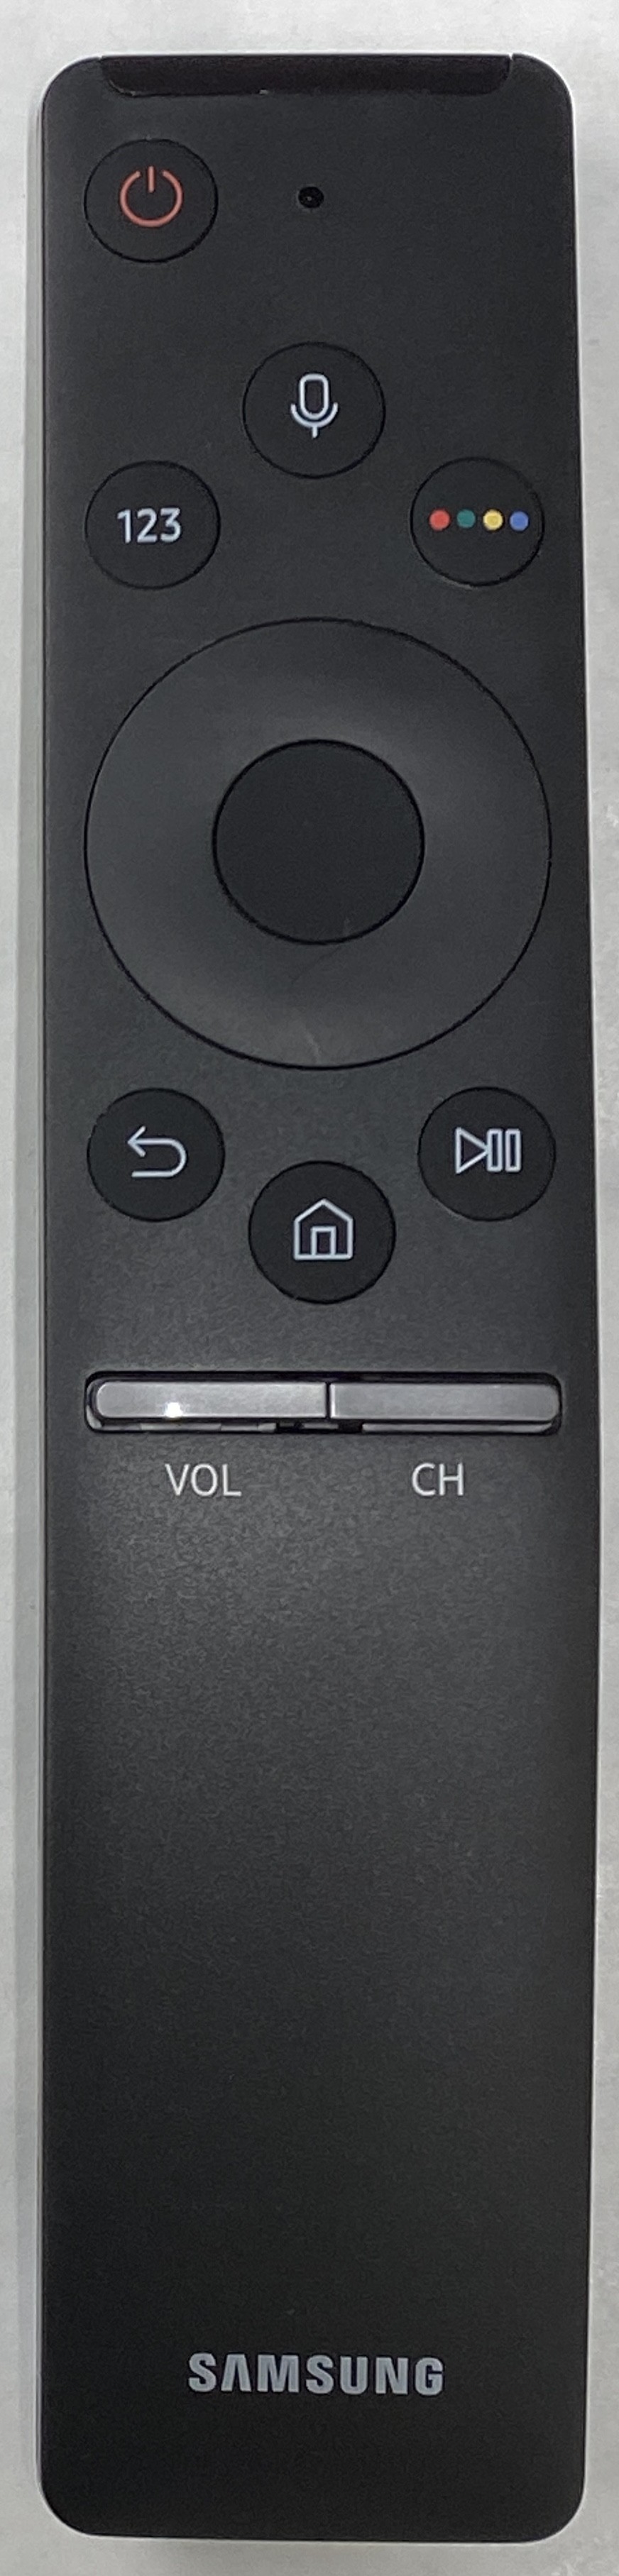 SAMSUNG UE65KS9000 Smart Remote Control Original